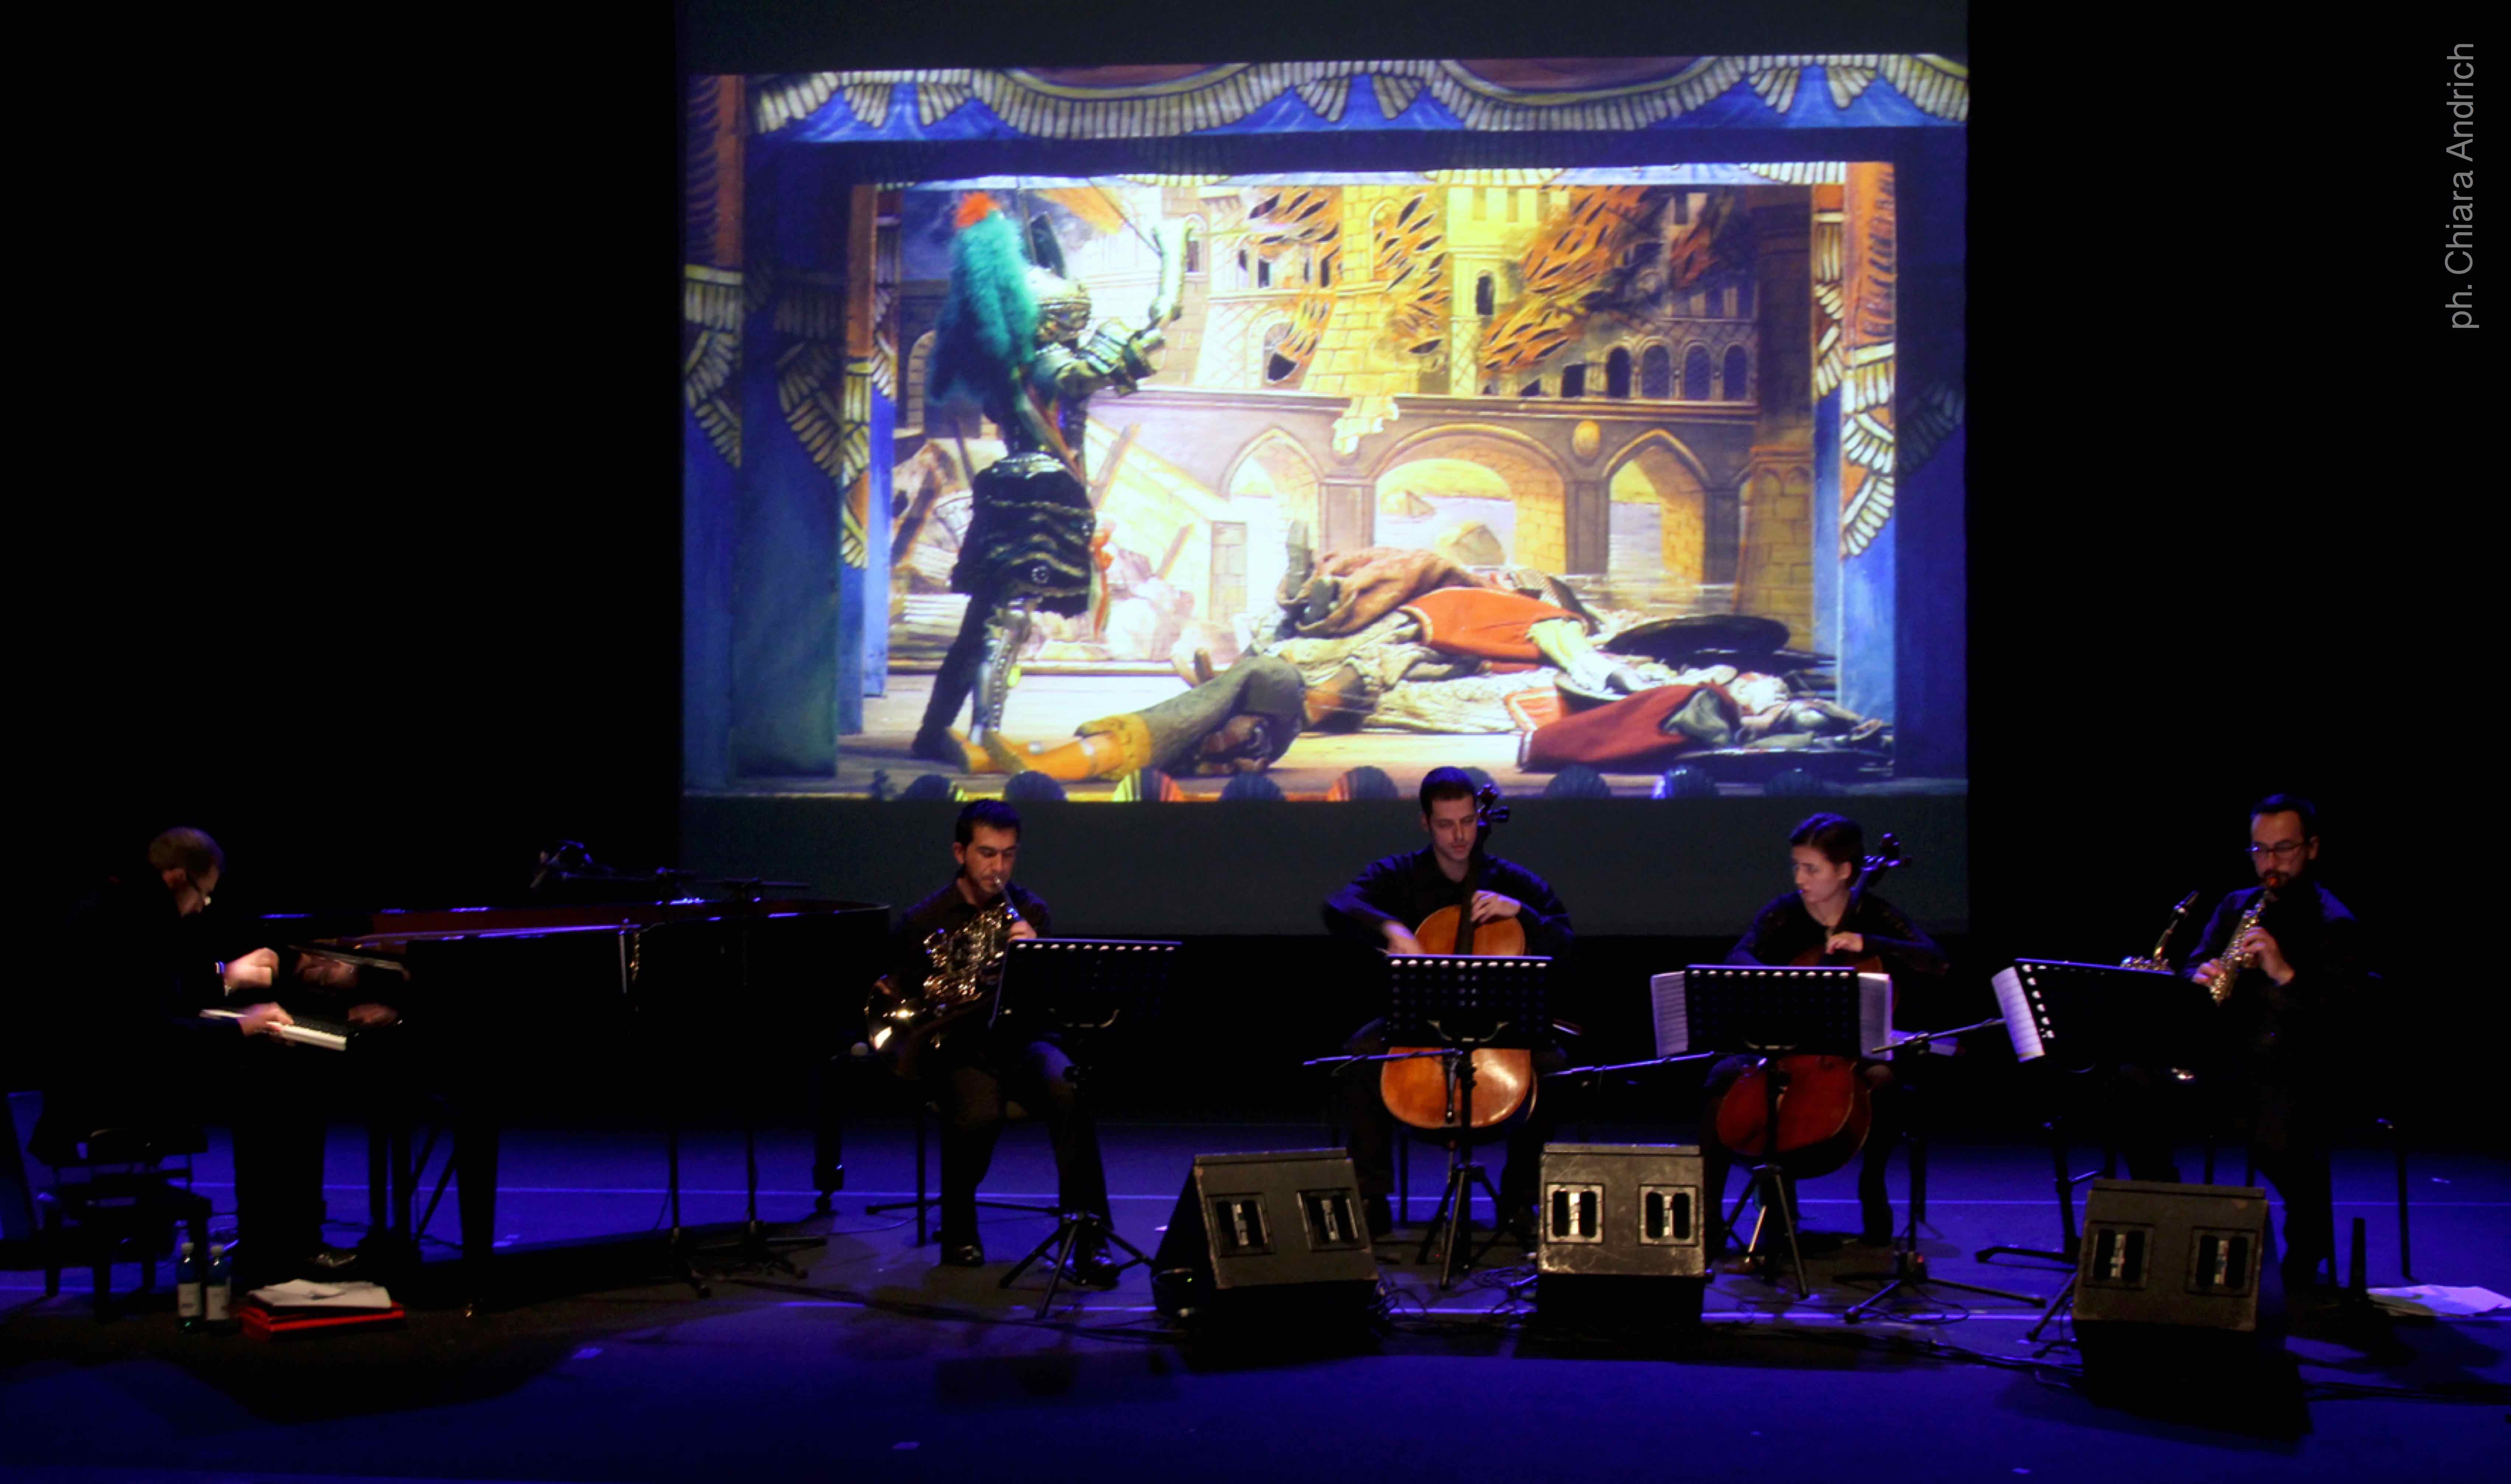 Giacomo Cuticchio Ensemble perform "Rapsodia Fantastica" Roma - Auditorium Parco della Musica © Chiara Andrich 2014